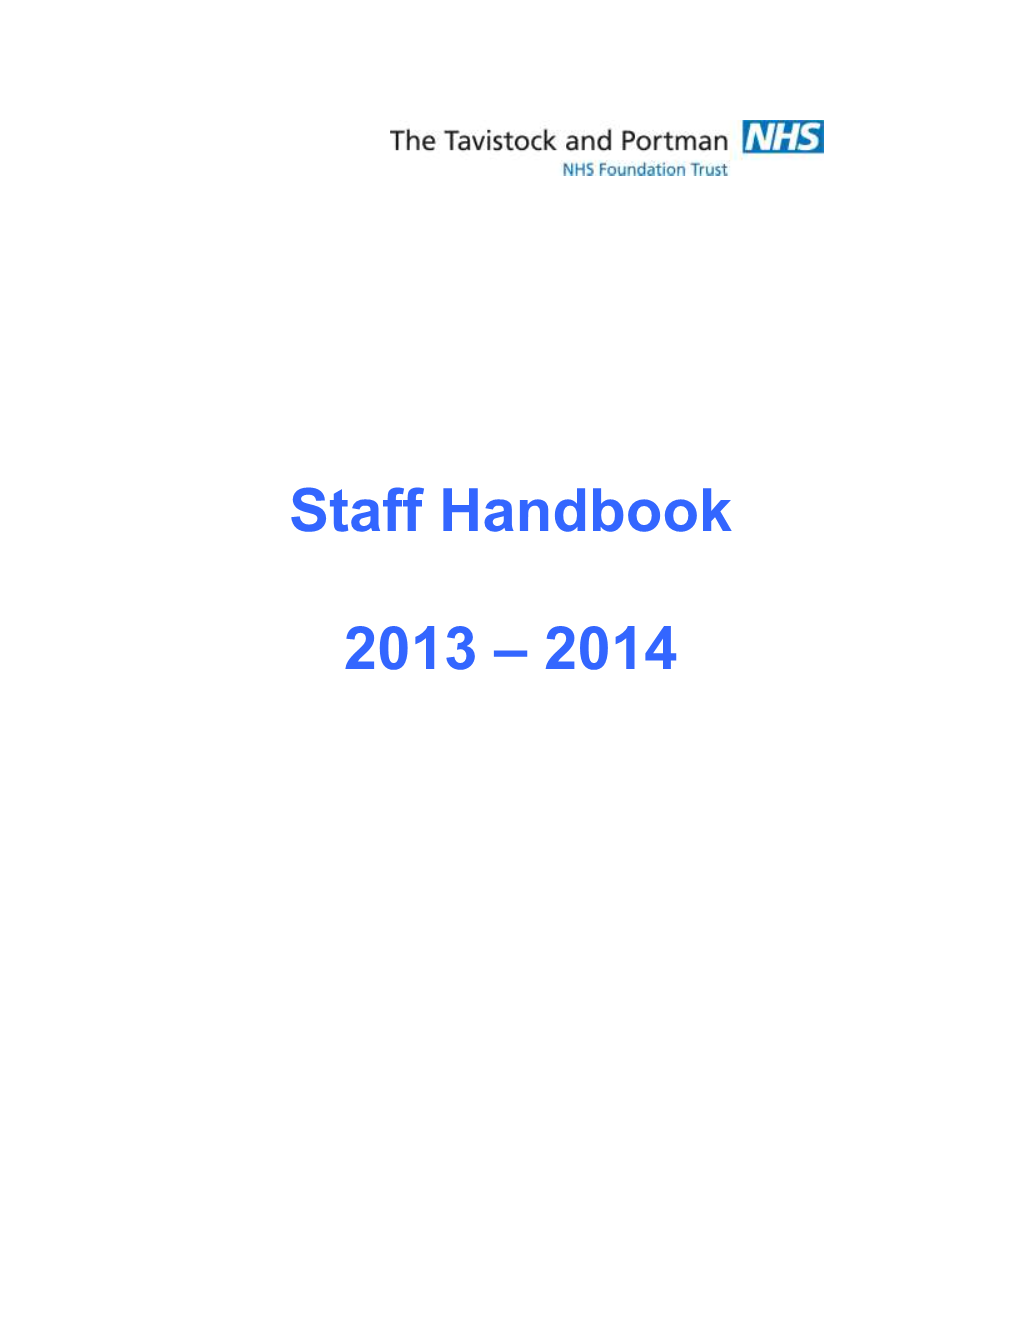 Staff Handbook 2013 – 2014